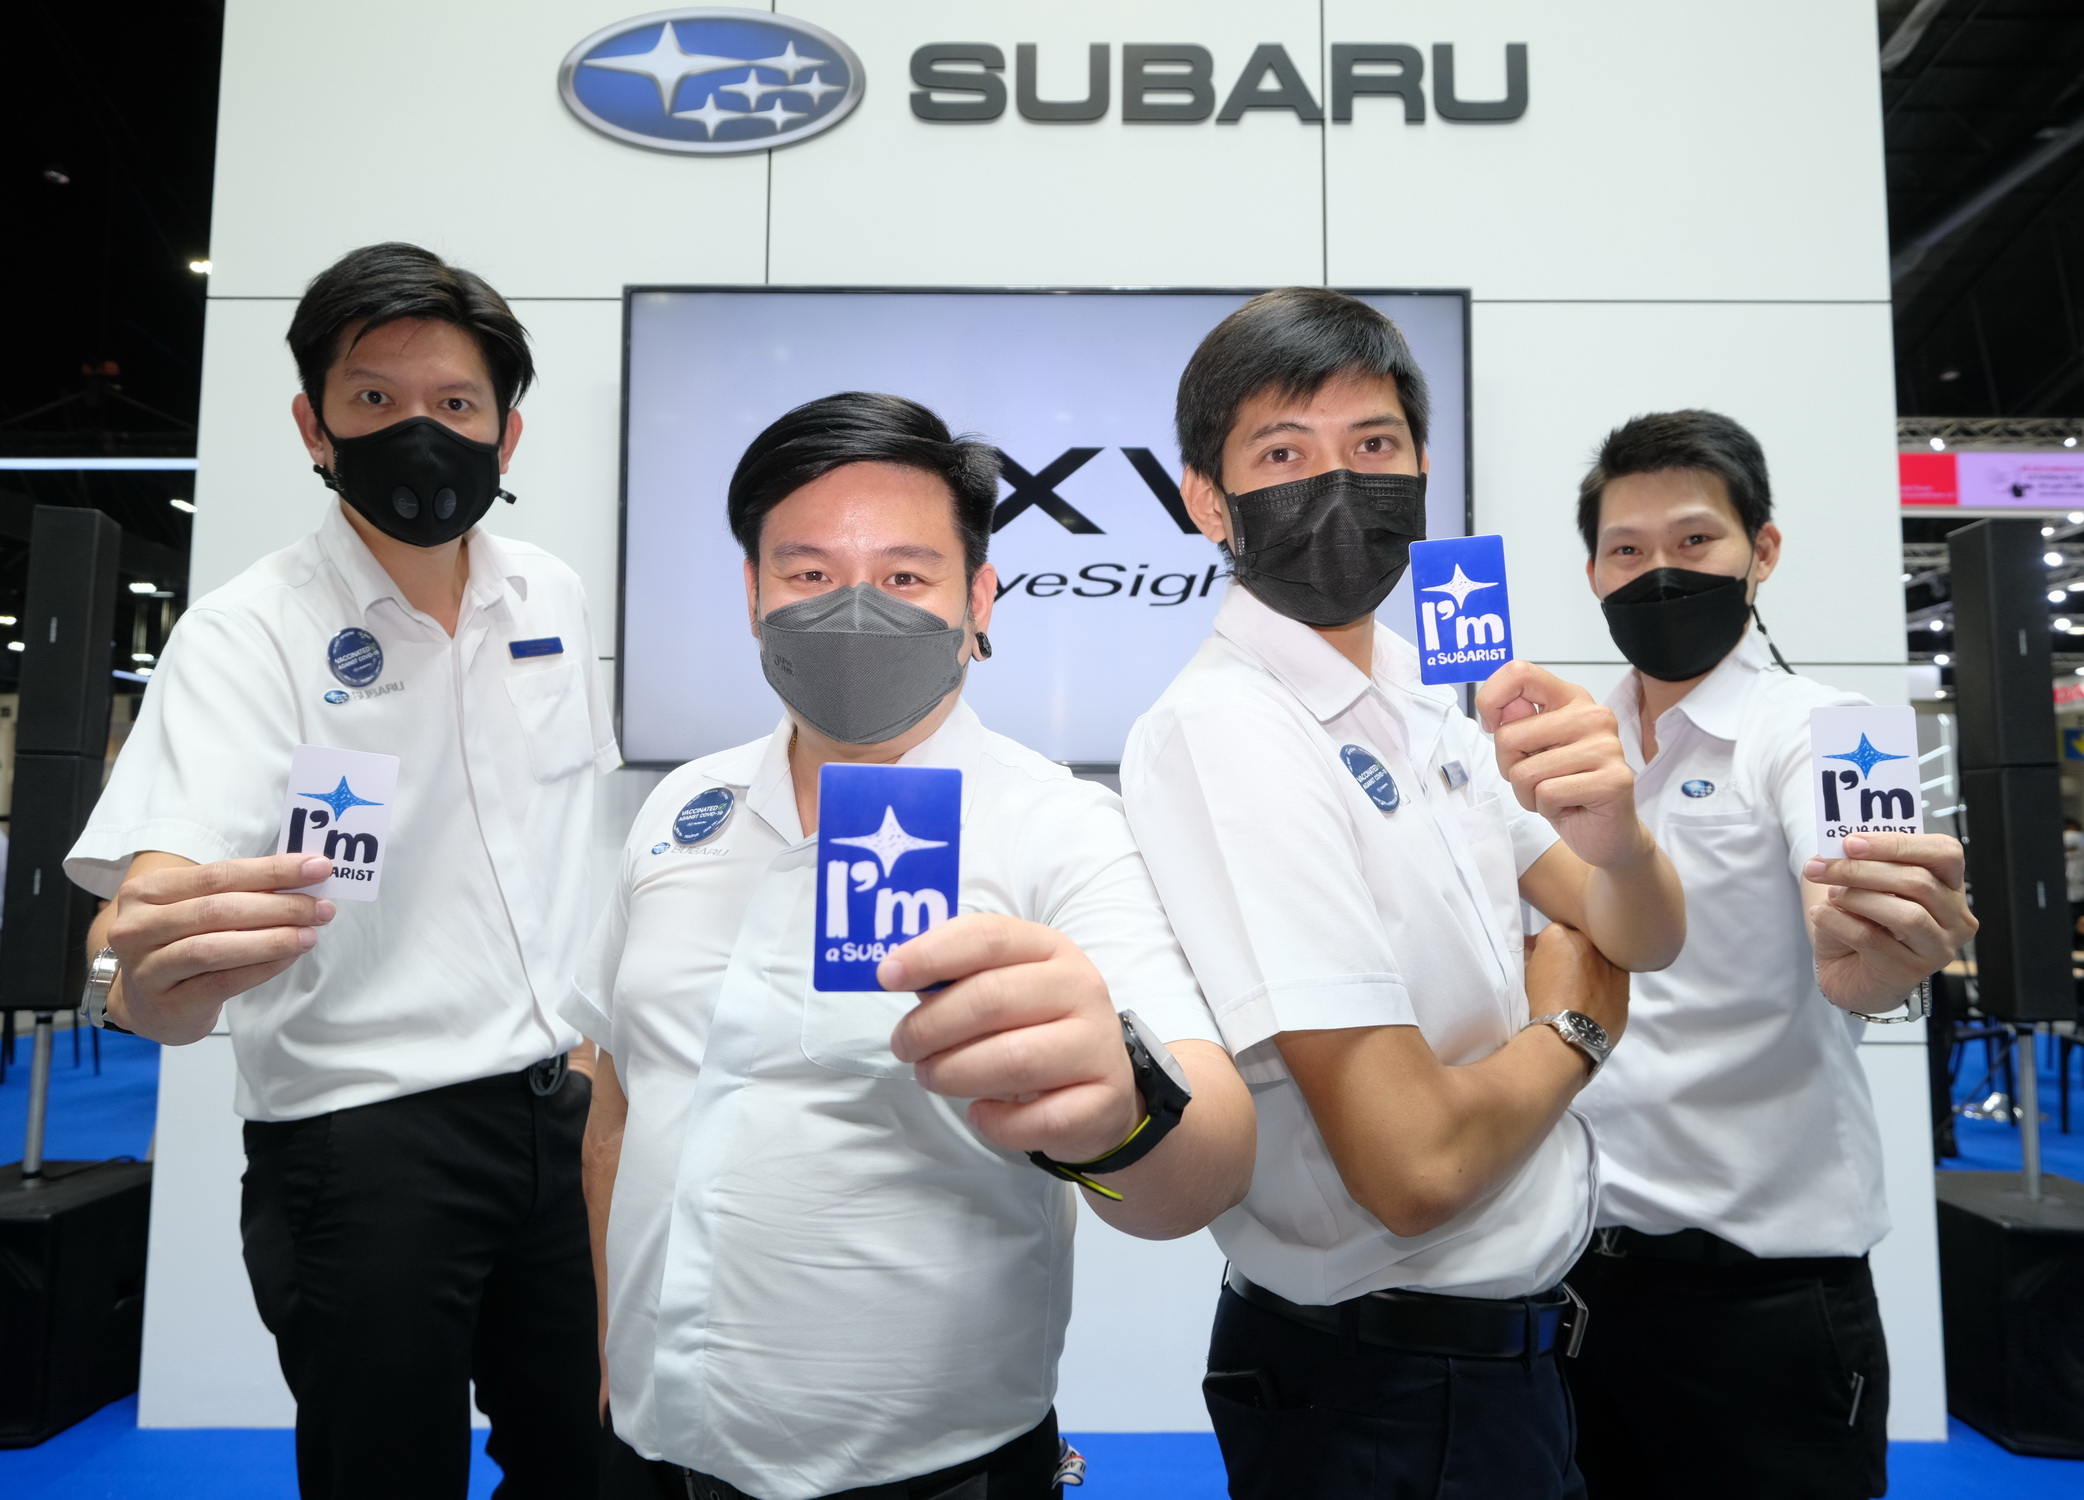 ซูบารุ แนะนำ “Subarist” ผู้เชี่ยวชาญในรถยนต์ซูบารุ พร้อมต้อนรับและให้คำปรึกษาลูกค้าที่สนใจในงาน Motor Expo 2021